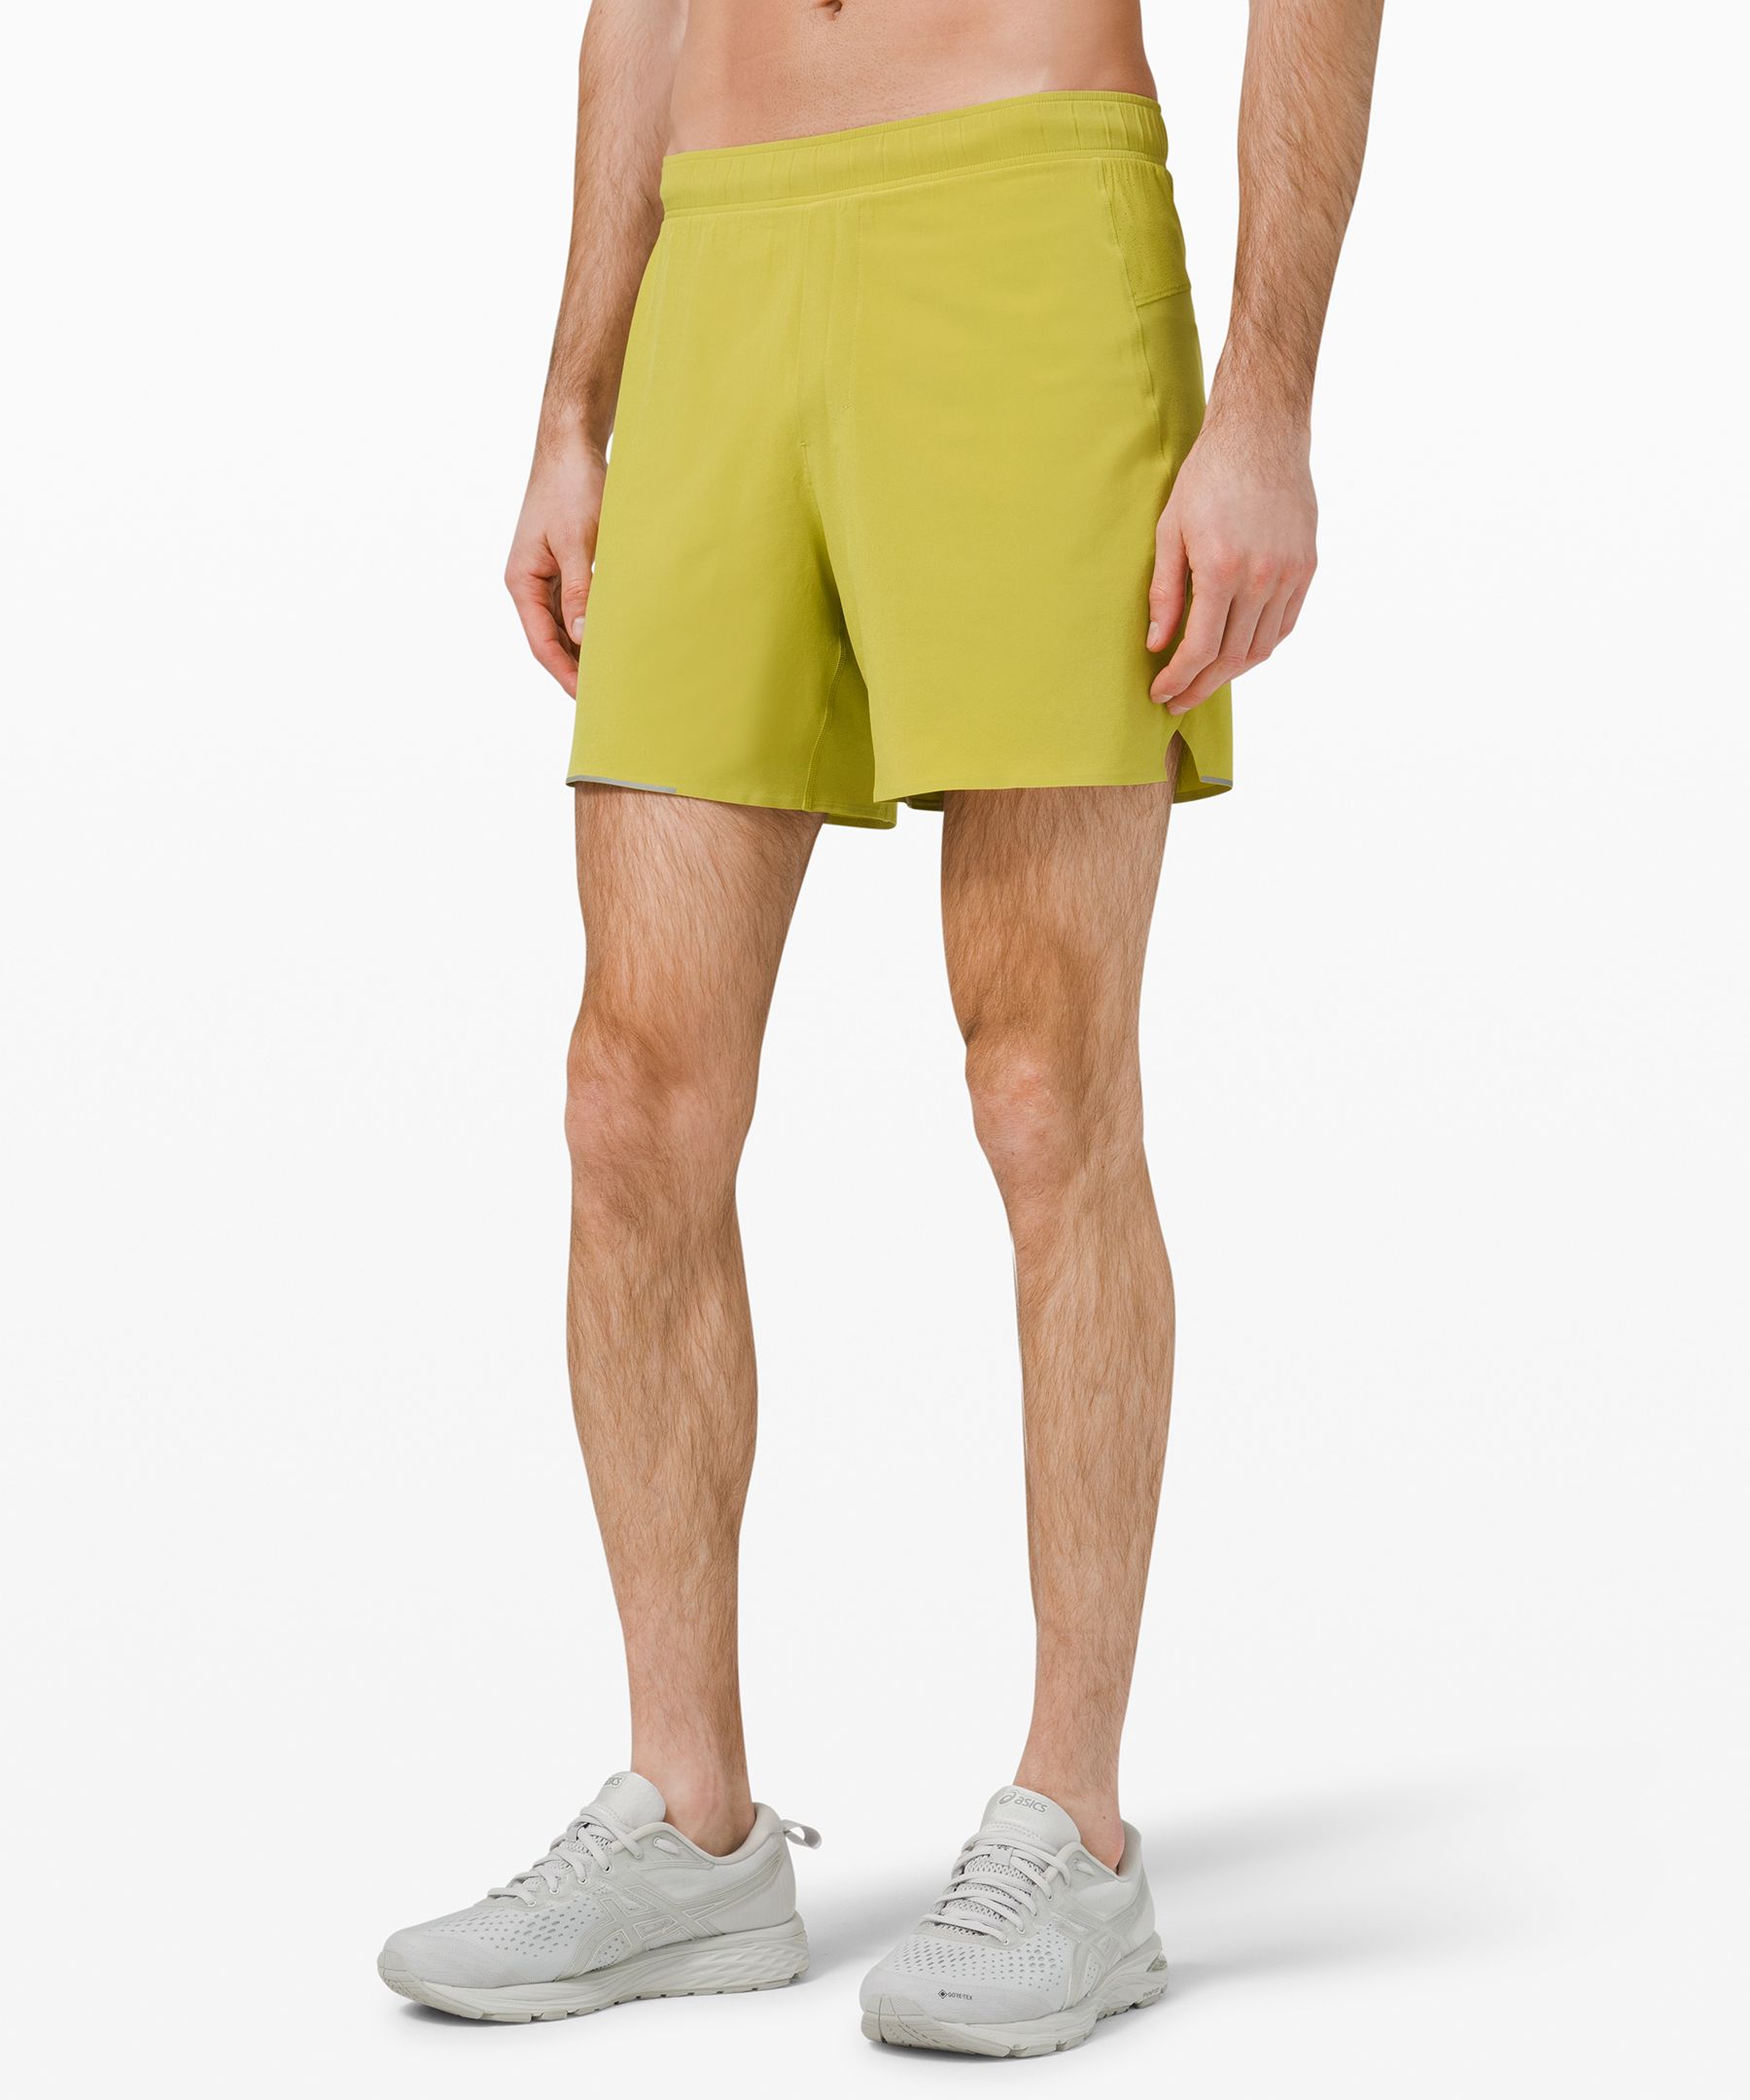 lululemon men's athletic shorts